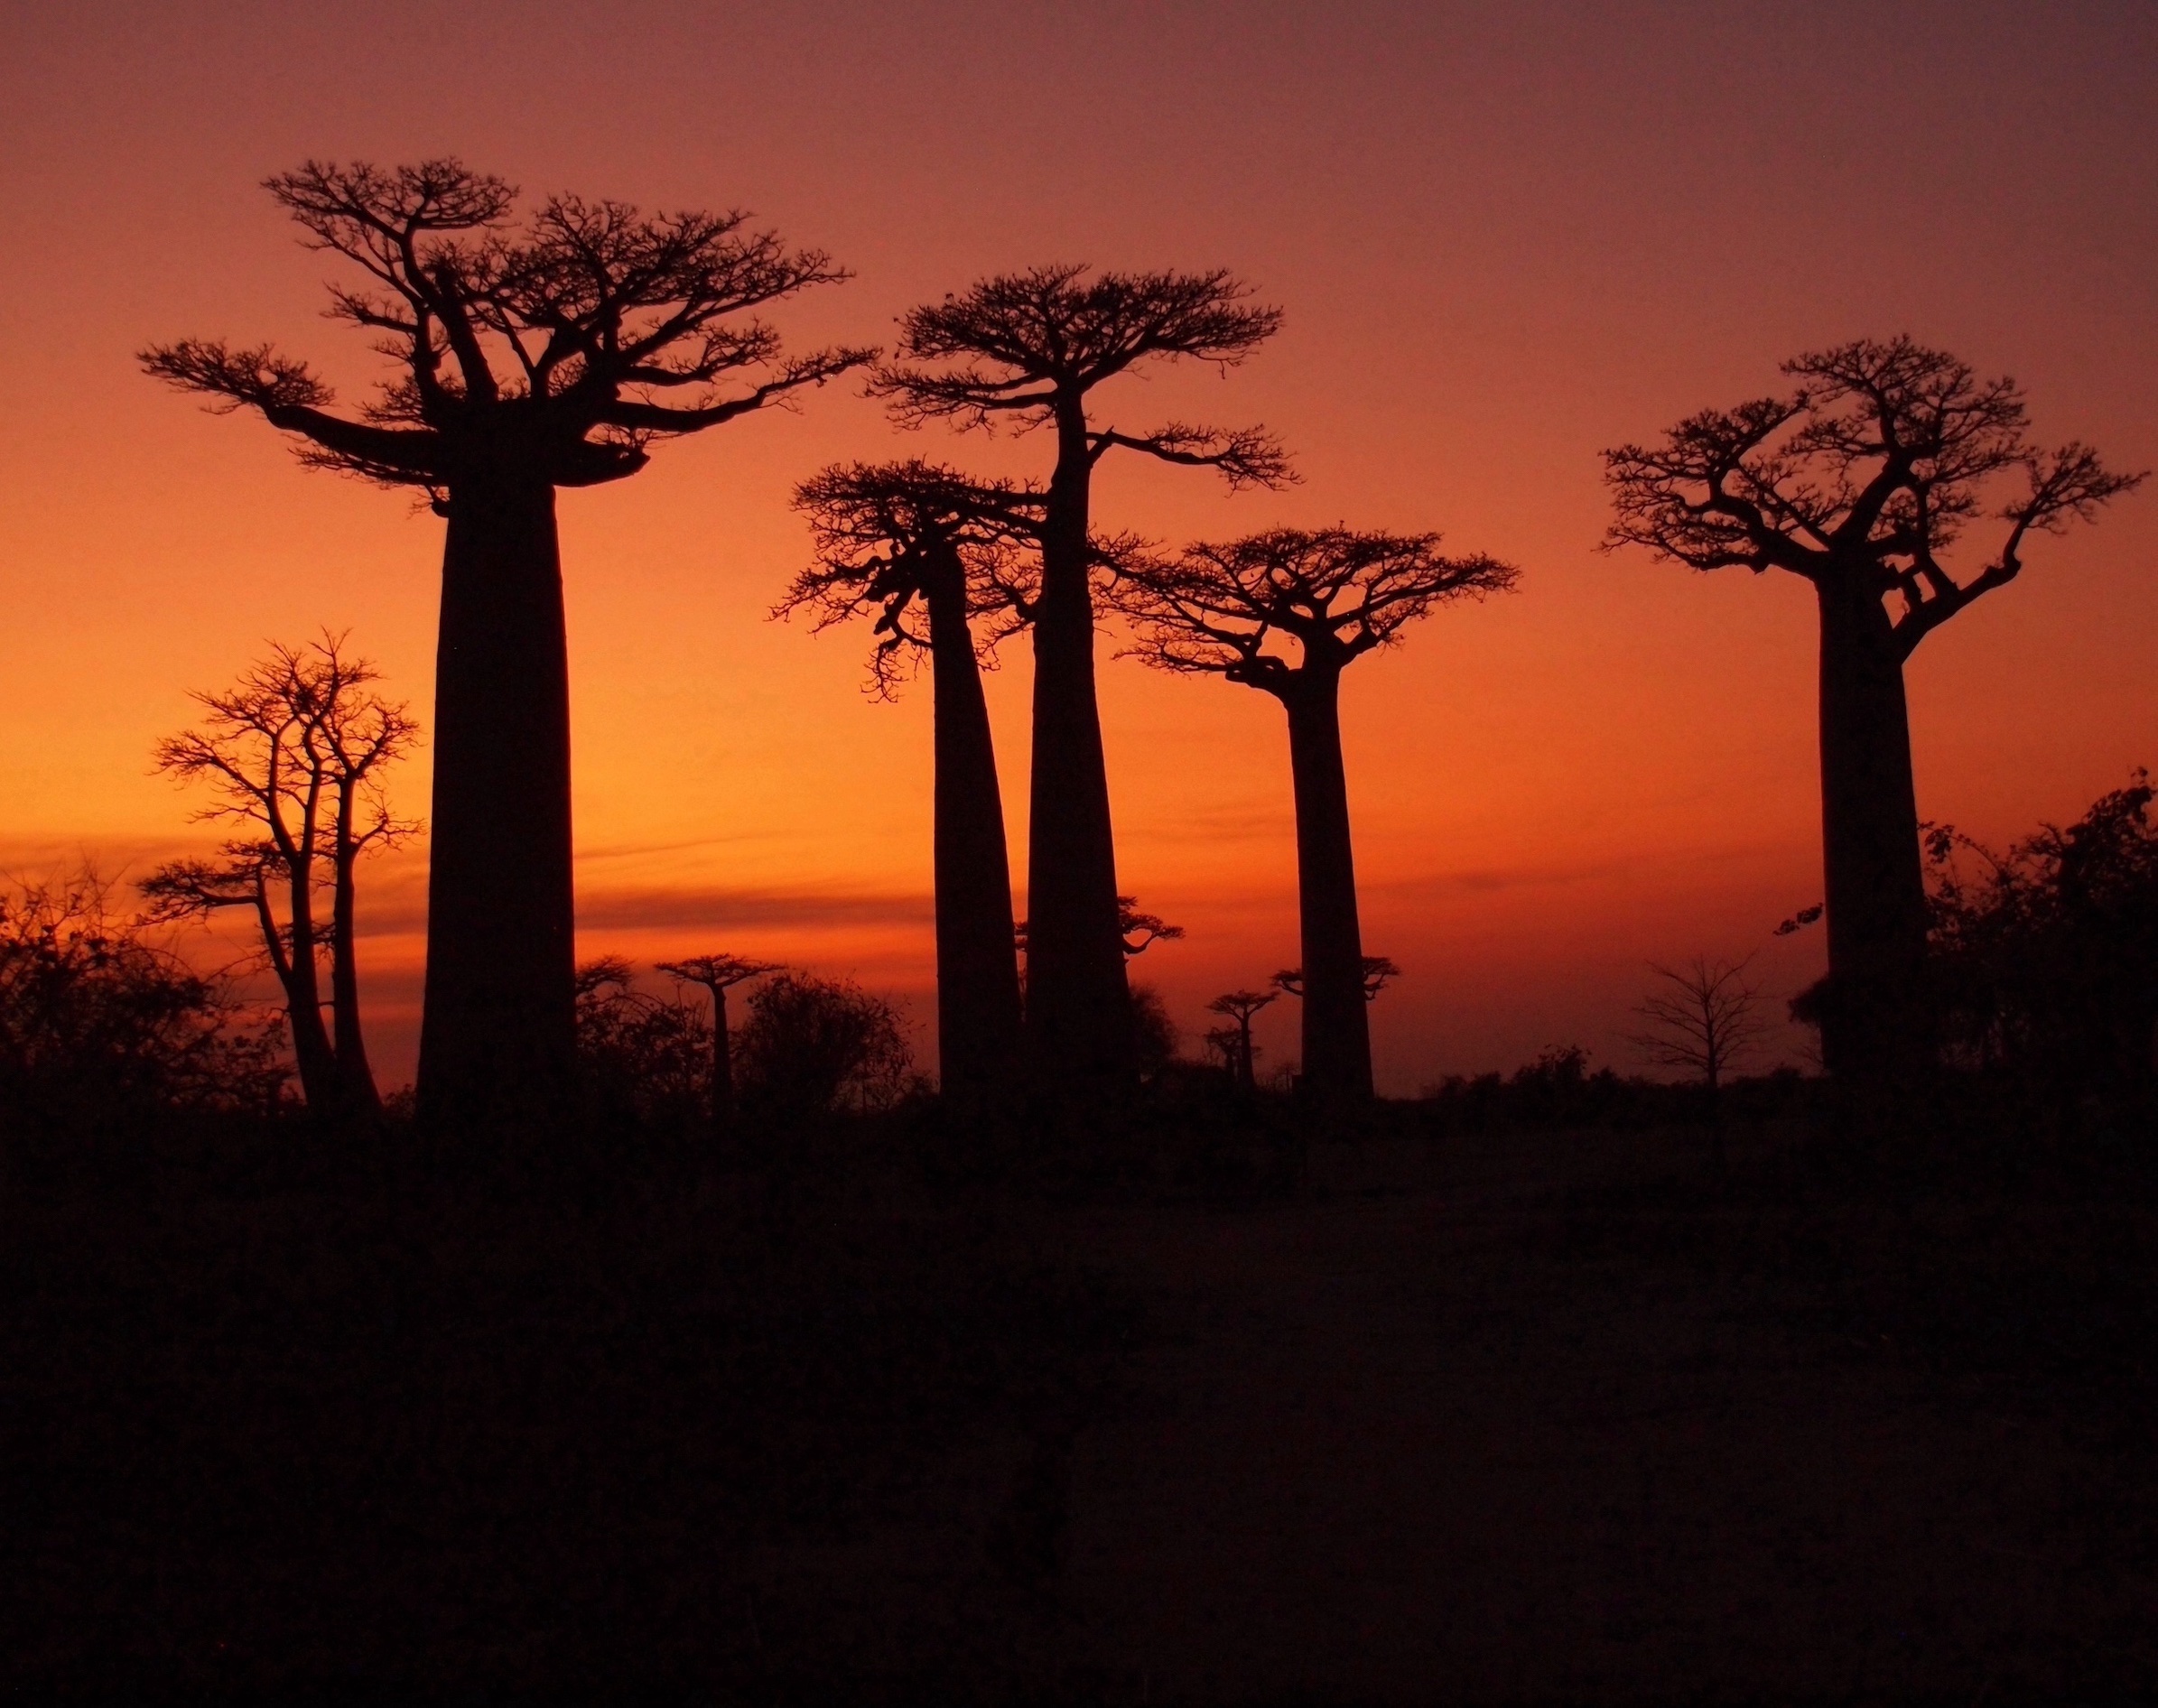 Avenue of The Baobabs by Alan Lichtenstein